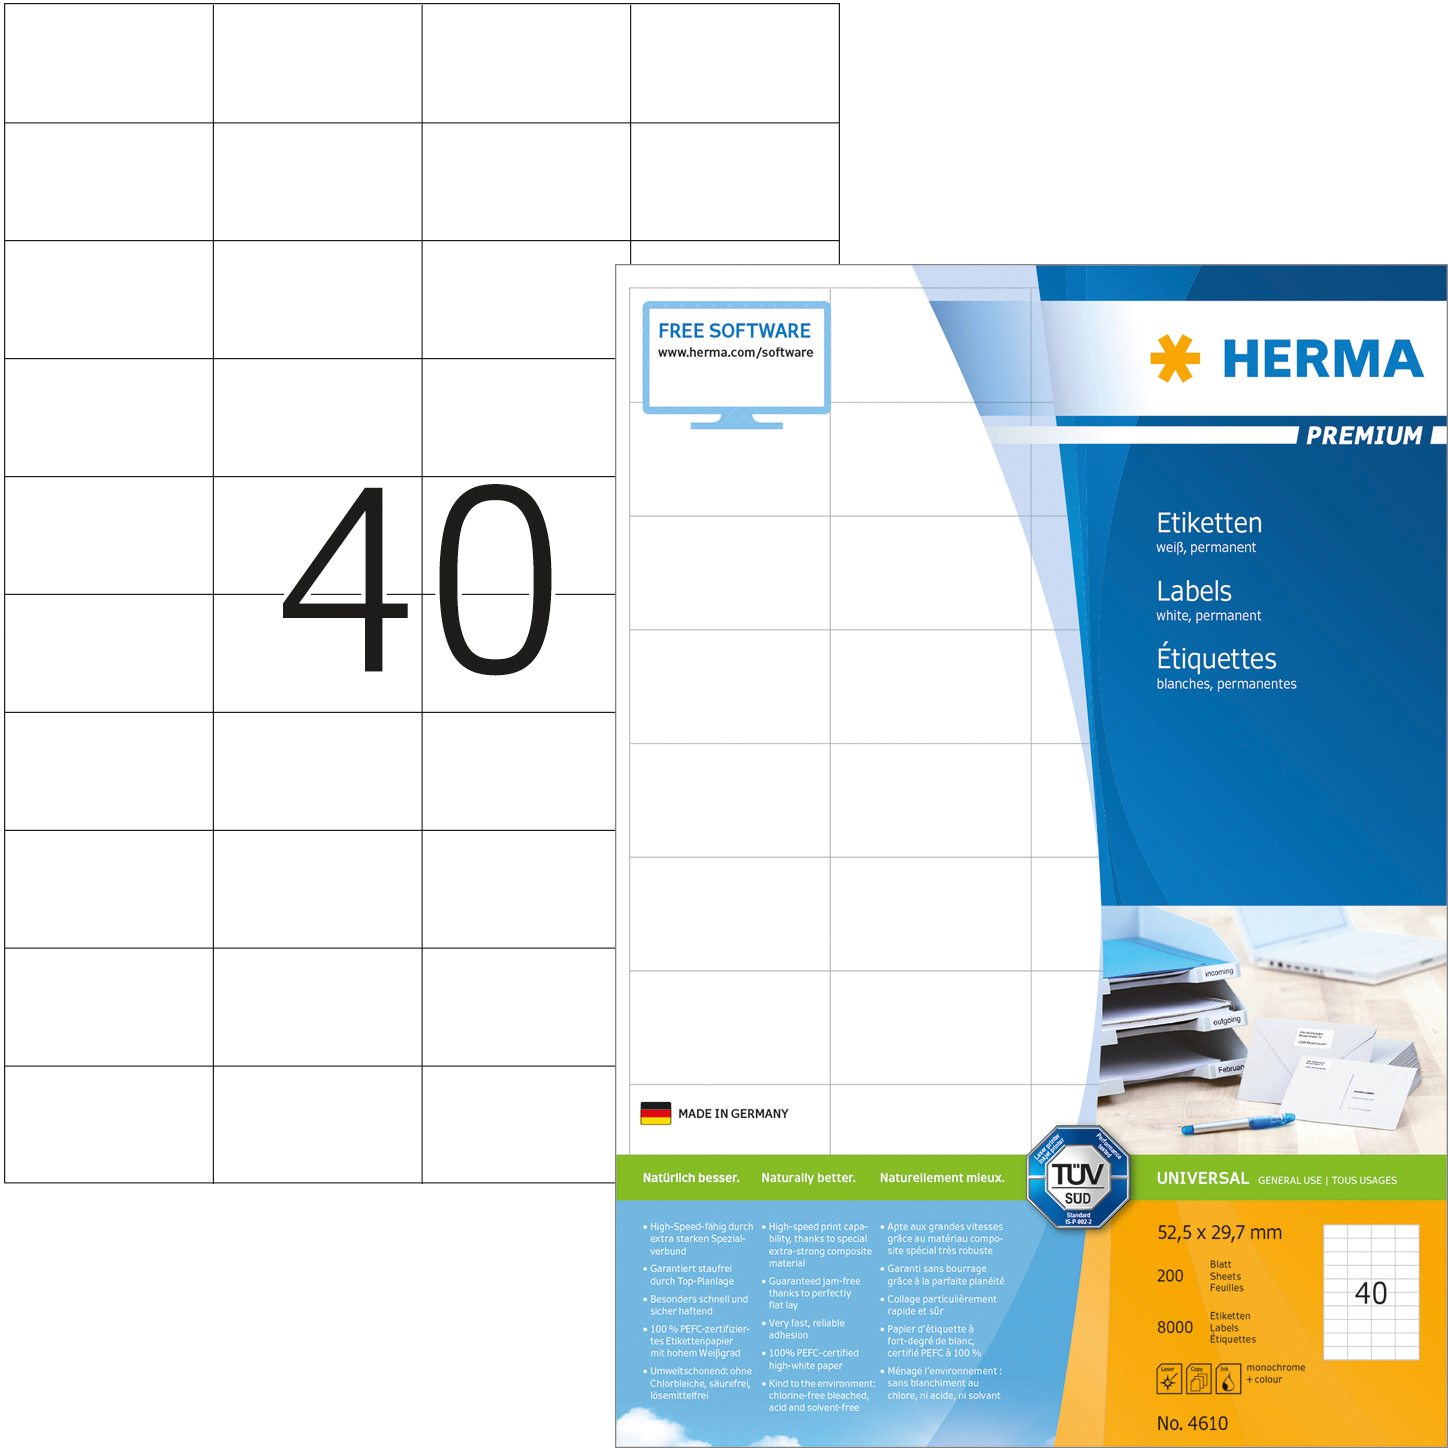 HERMA Etiquettes Premium 52,5×29,7mm 4610 blanc 8000 pcs.